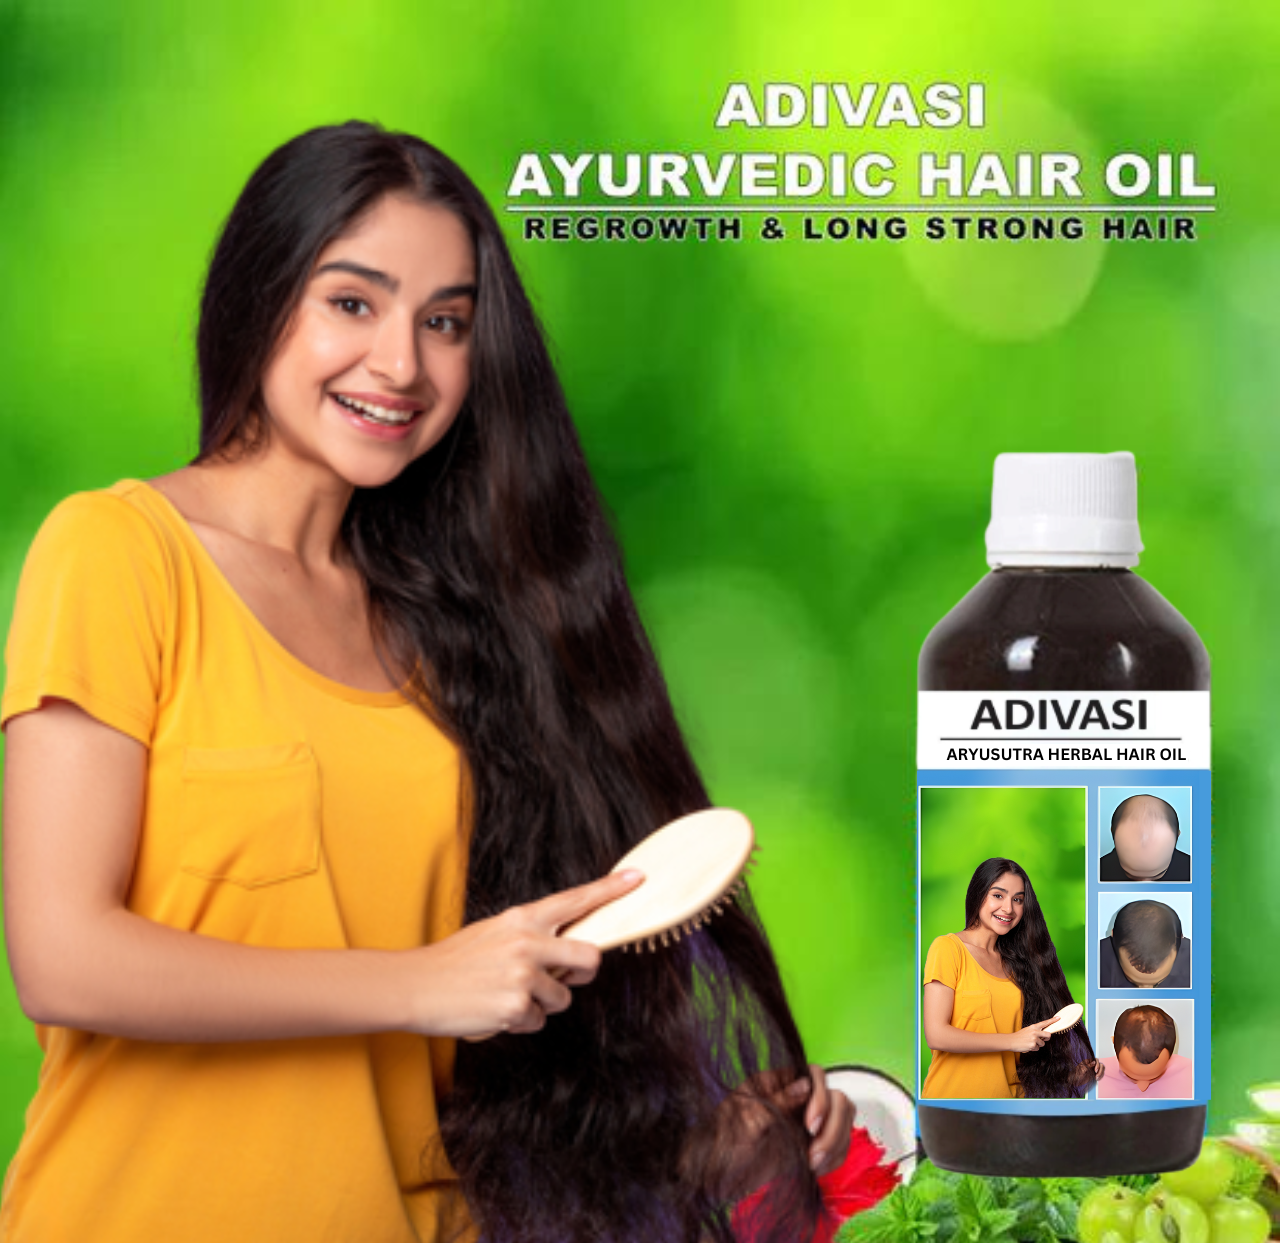 Buy Super Vasmol 33 Hair Dye Emulsion Type Kesh Kala 100 Ml Online at the  Best Price of Rs 65  bigbasket